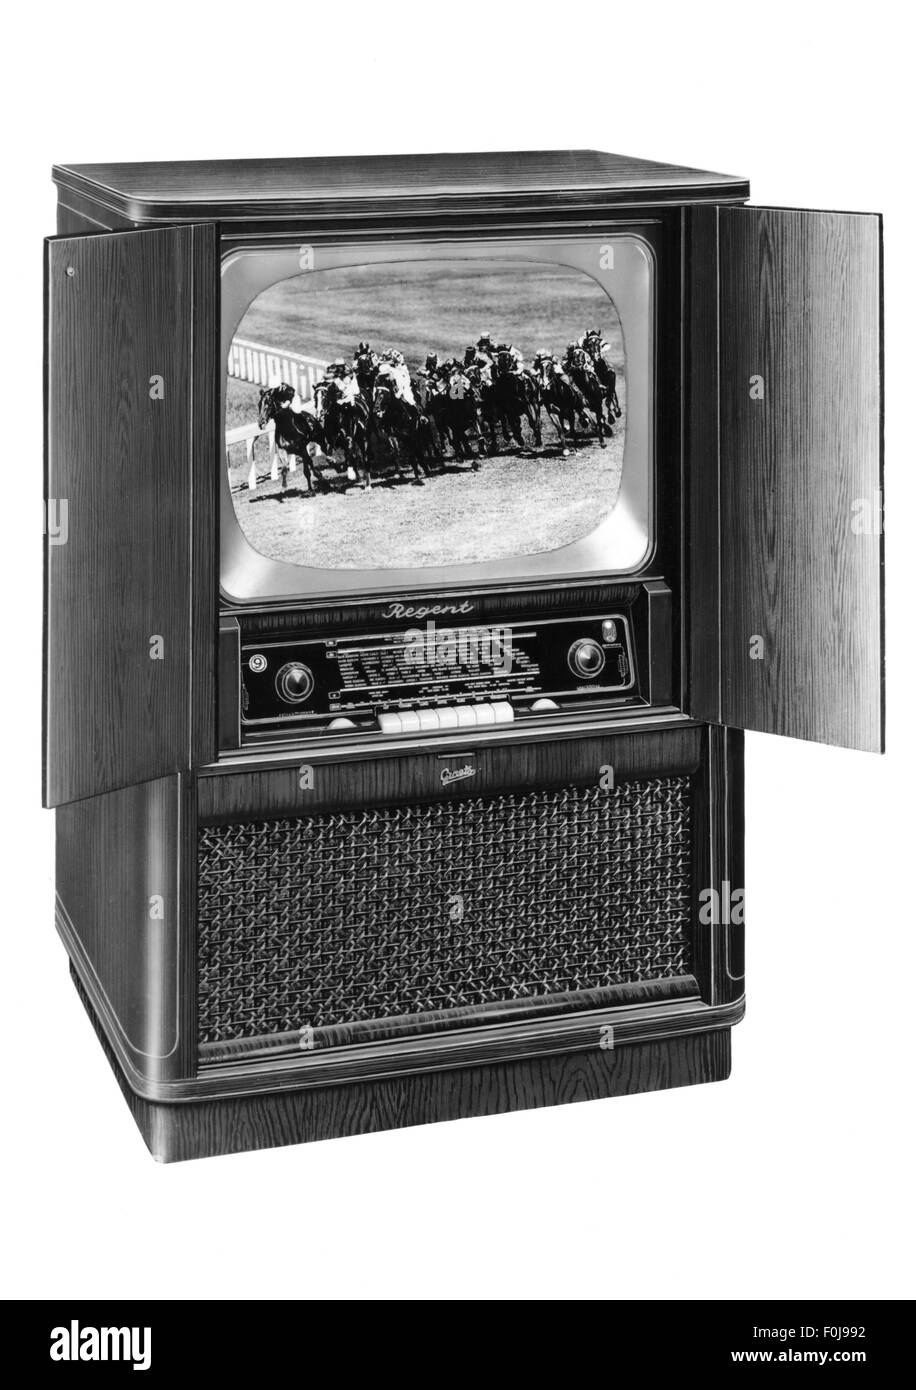 Trasmissione, televisione, combinazione di radio e televisione, tipo 'Regent' di Graetz, anni '50, diritti aggiuntivi-clearences-non disponibile Foto Stock